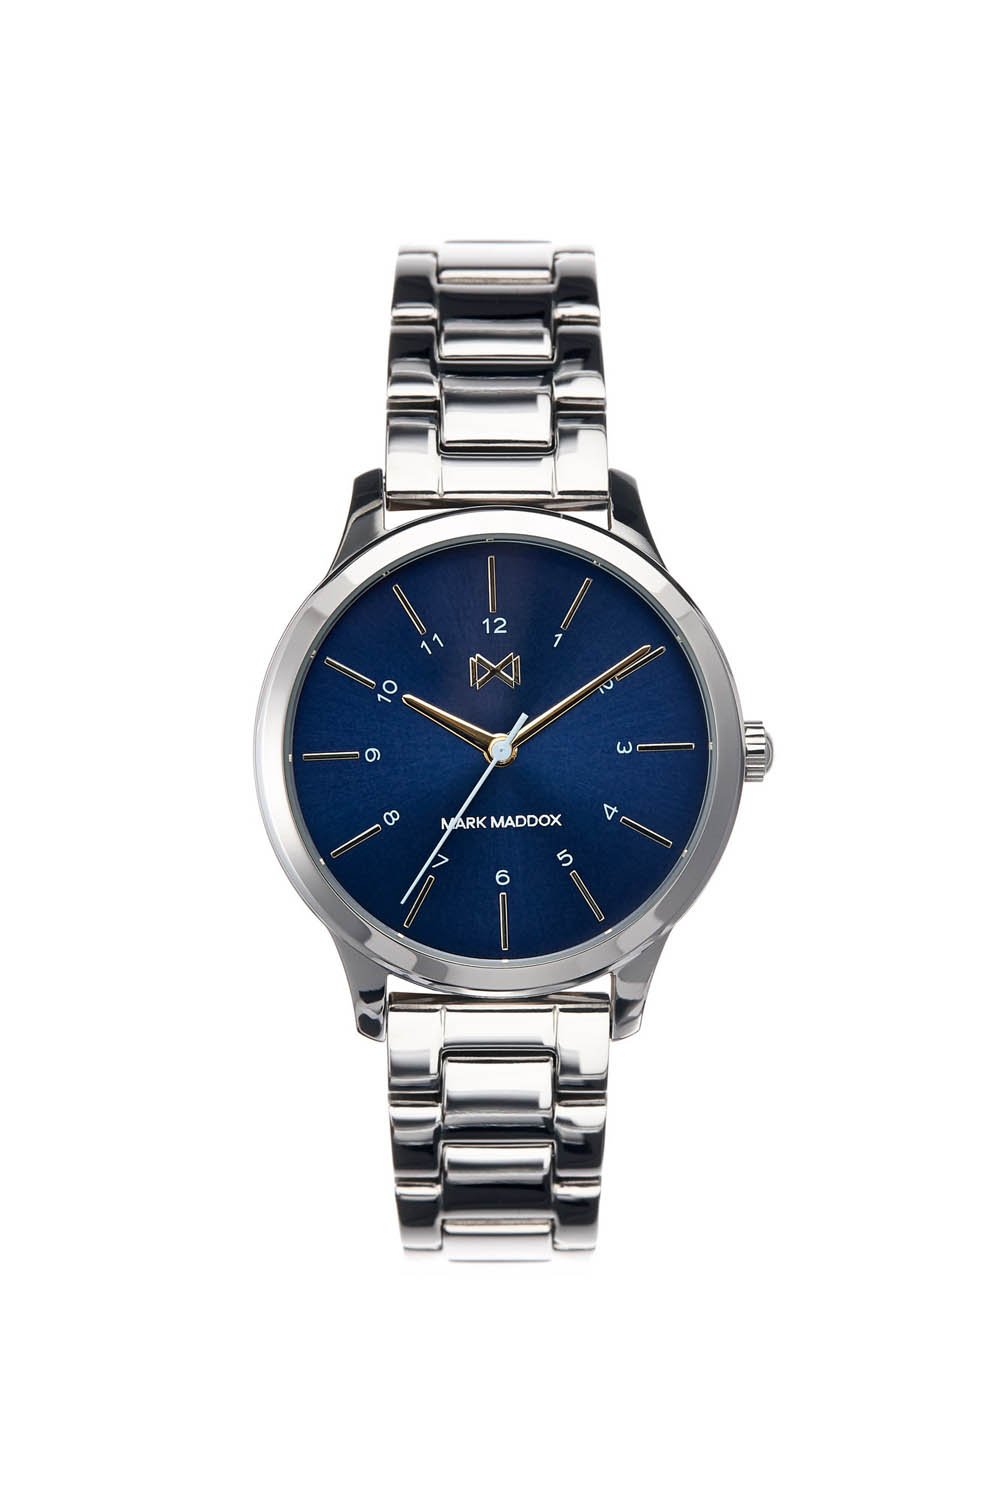 Reloj Mark Maddox Village MM7100-37 Mujer Azul - Francisco Ortuño